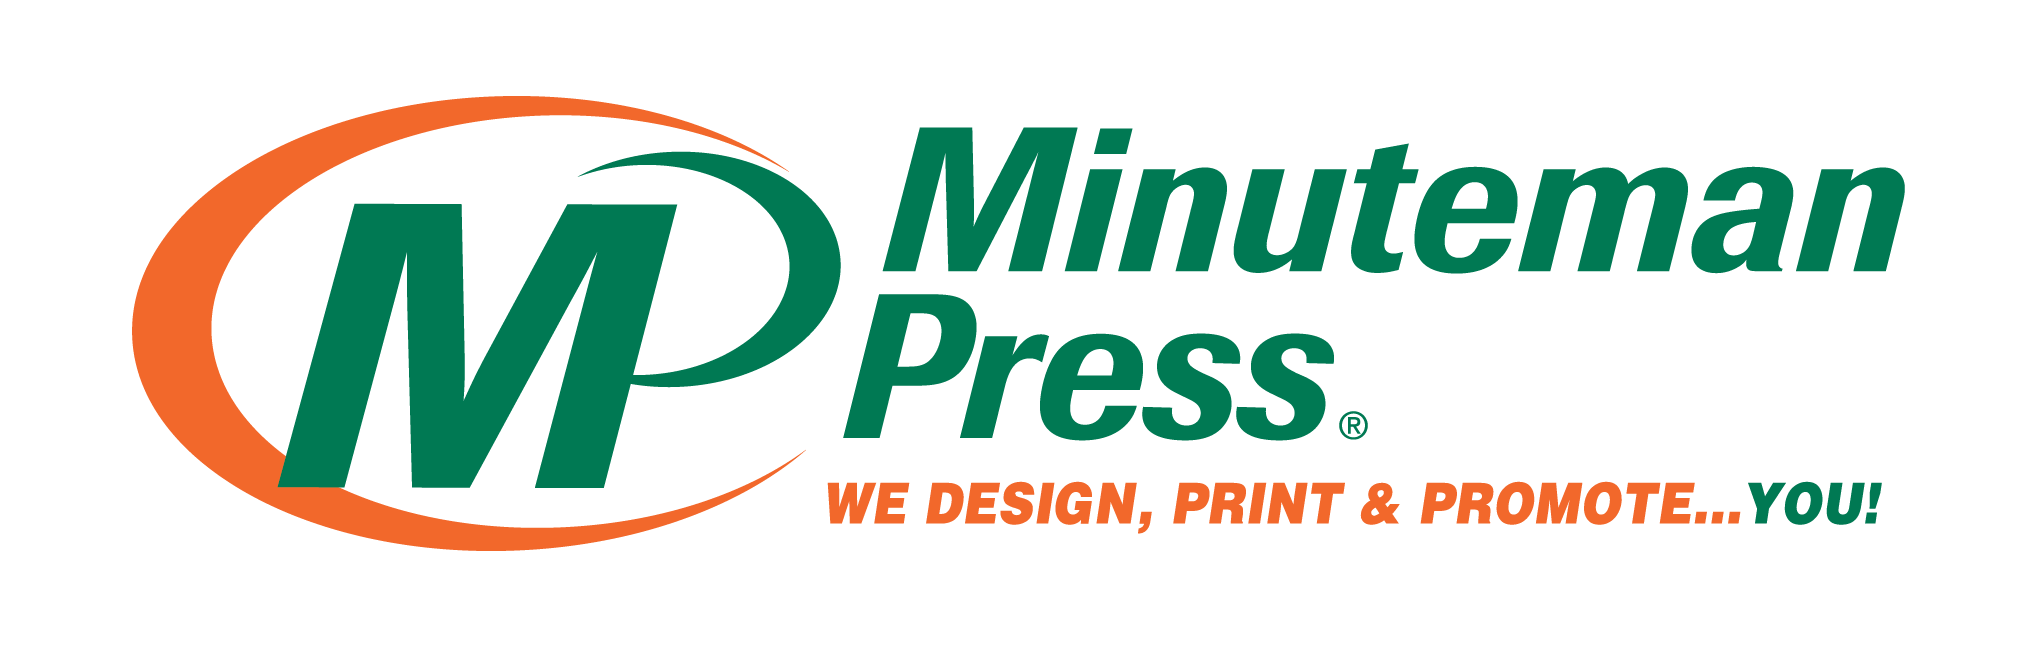 Minuteman Press Macclesfield